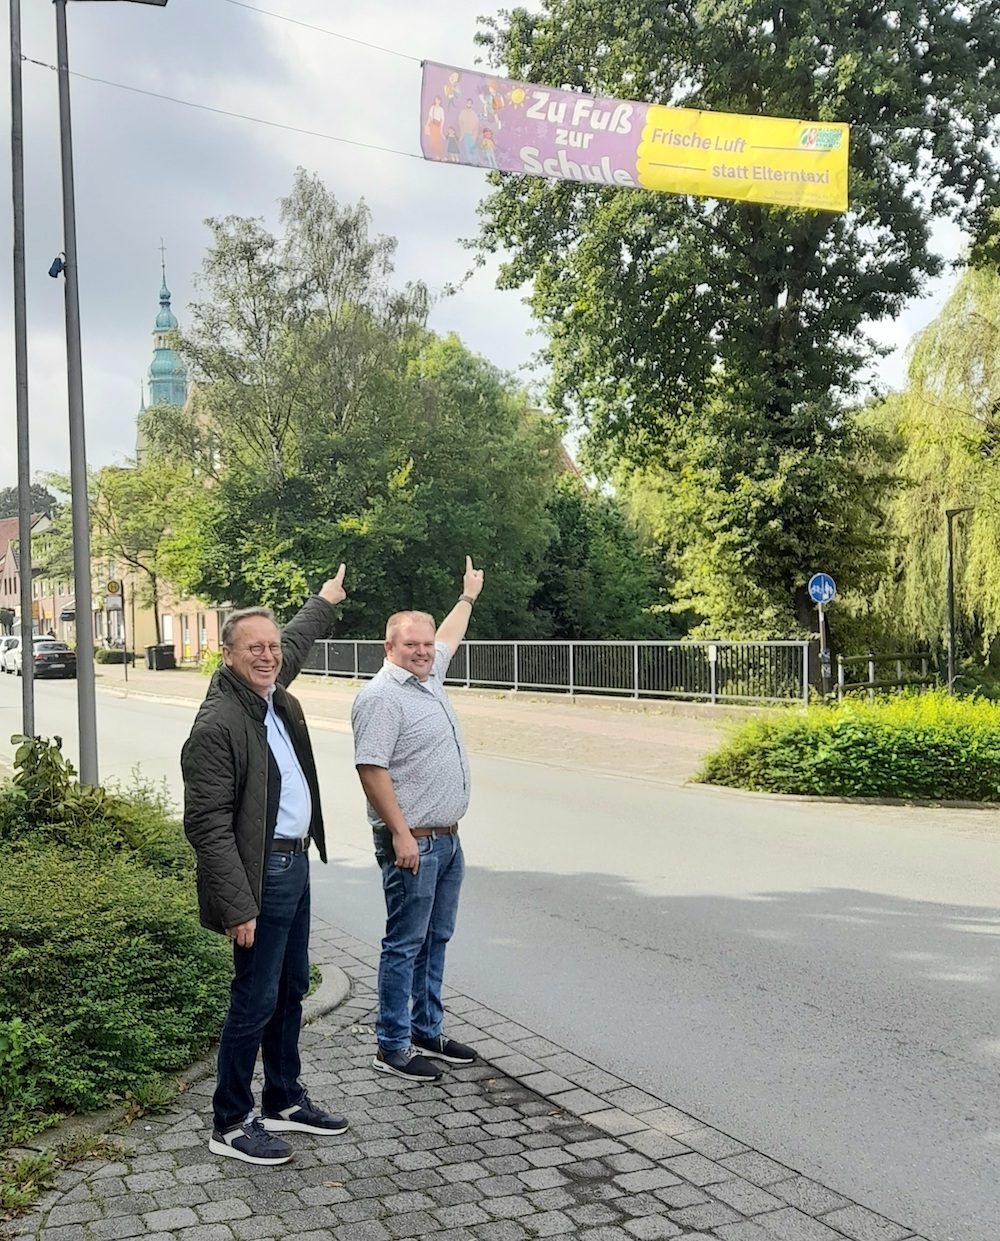 Verkehrswacht im Kreis Warendorf rät:  Frische Luft statt Elterntaxi